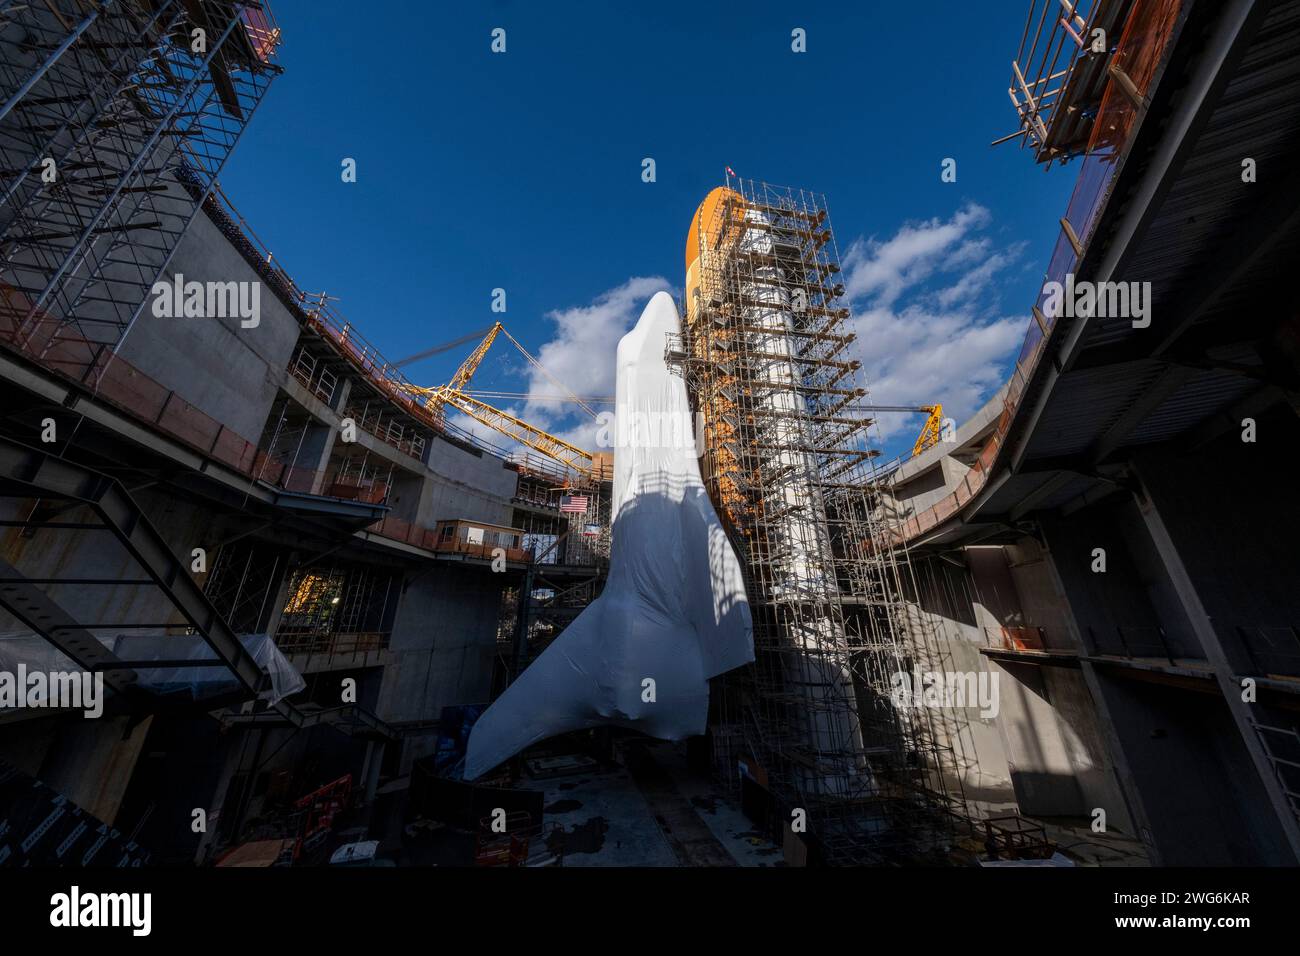 Das Space Shuttle Endeavour ist in vertikaler Starterkonfiguration mit zwei festen Raketenverstärkern und externem Kraftstofftank 94 (ET-94) auf der Baustelle des Samuel Oschin Air and Space Center im California Science Center in Los Angeles zu sehen. Stockfoto